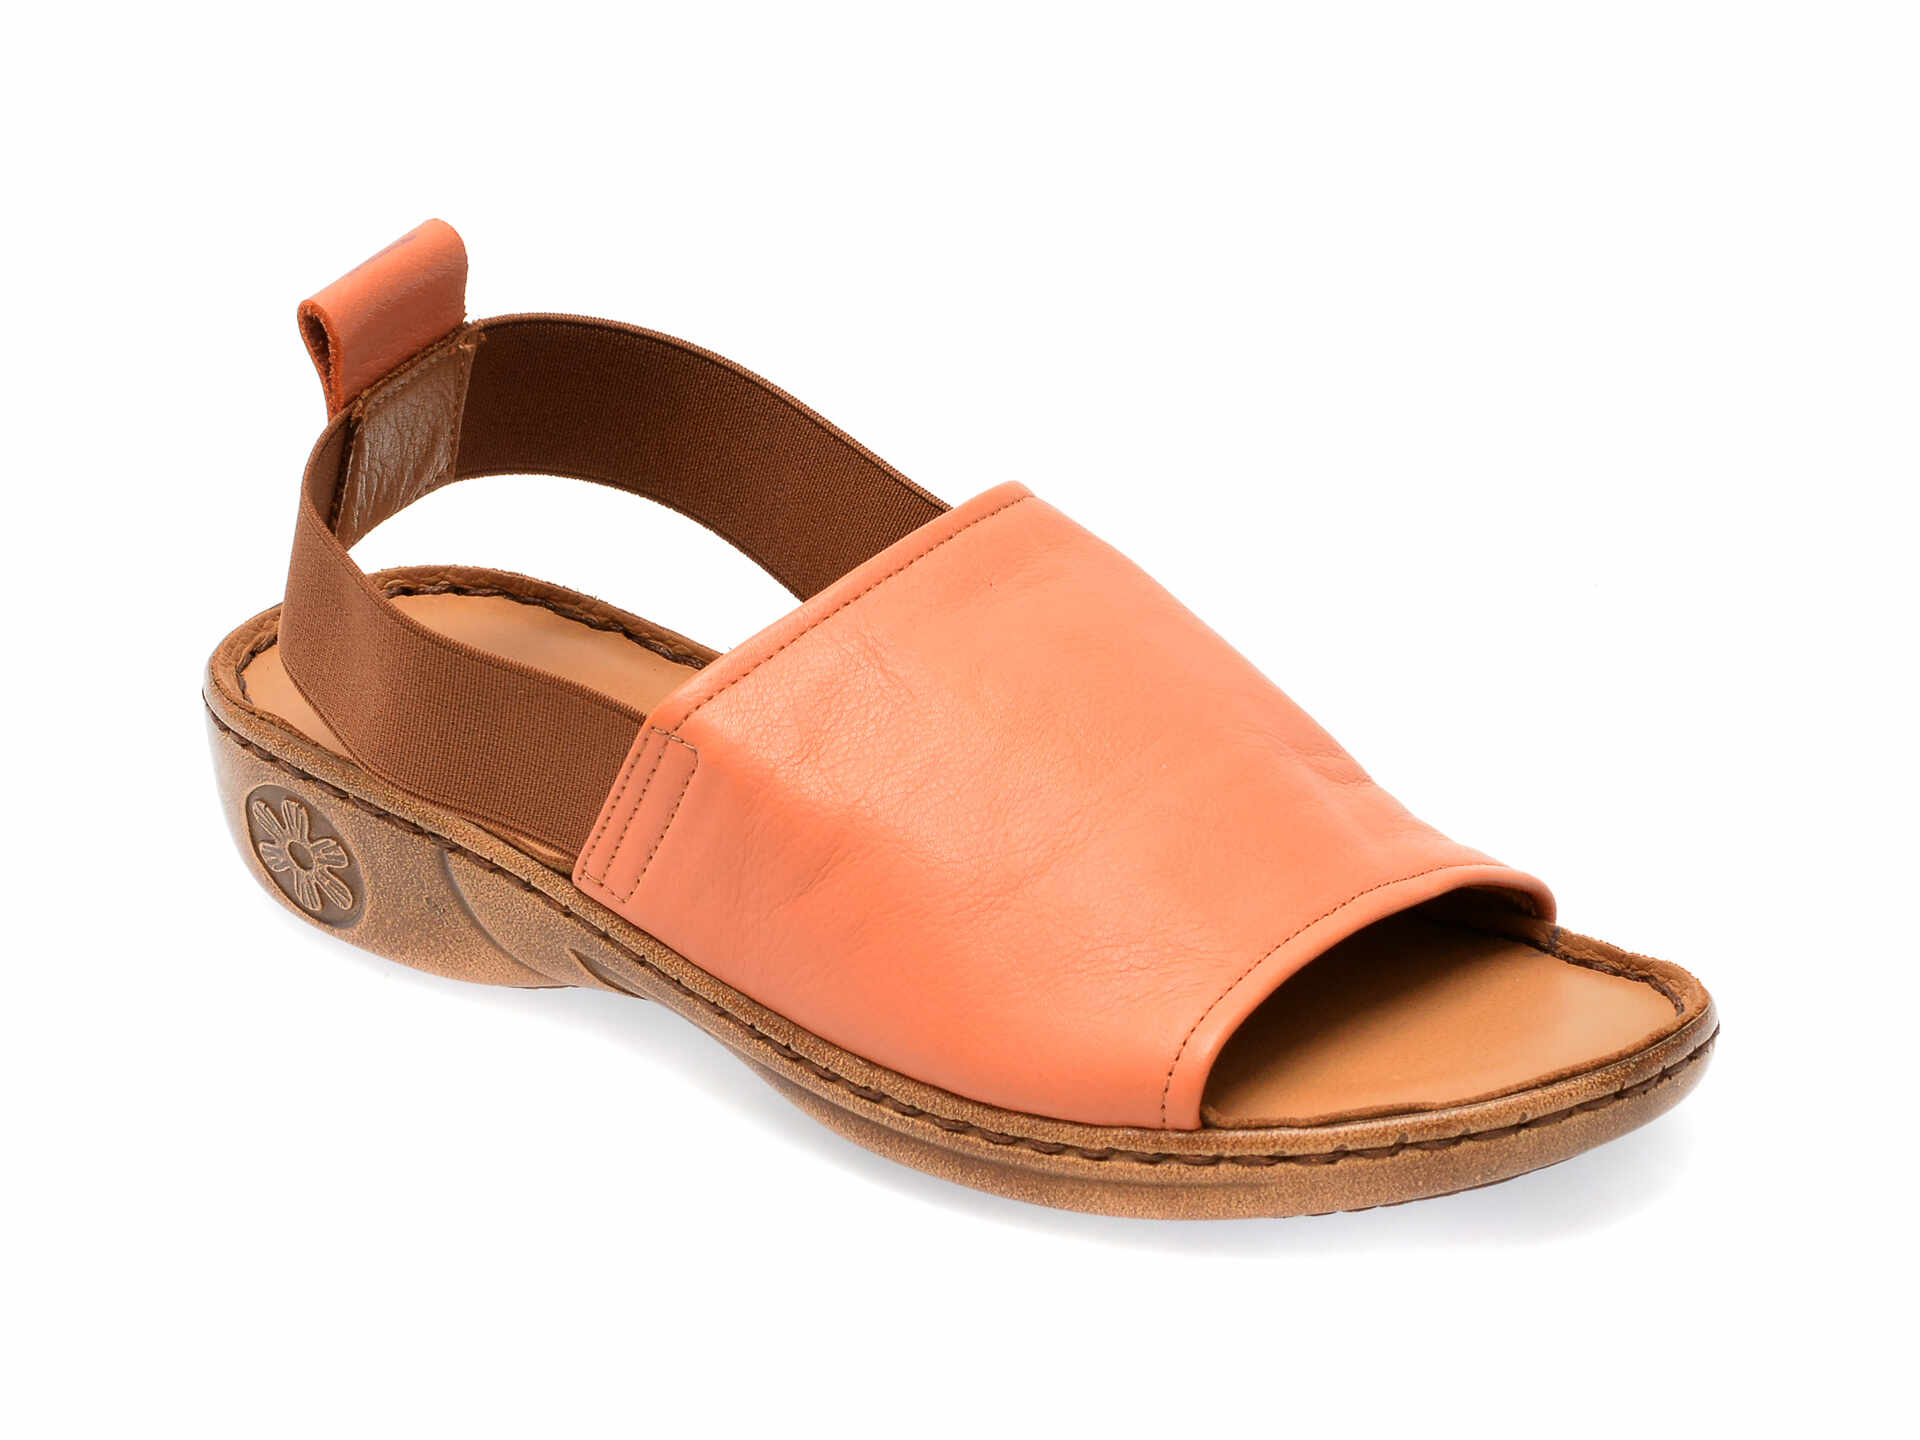 Sandale FLAVIA PASSINI portocalii, 211070, din piele naturala